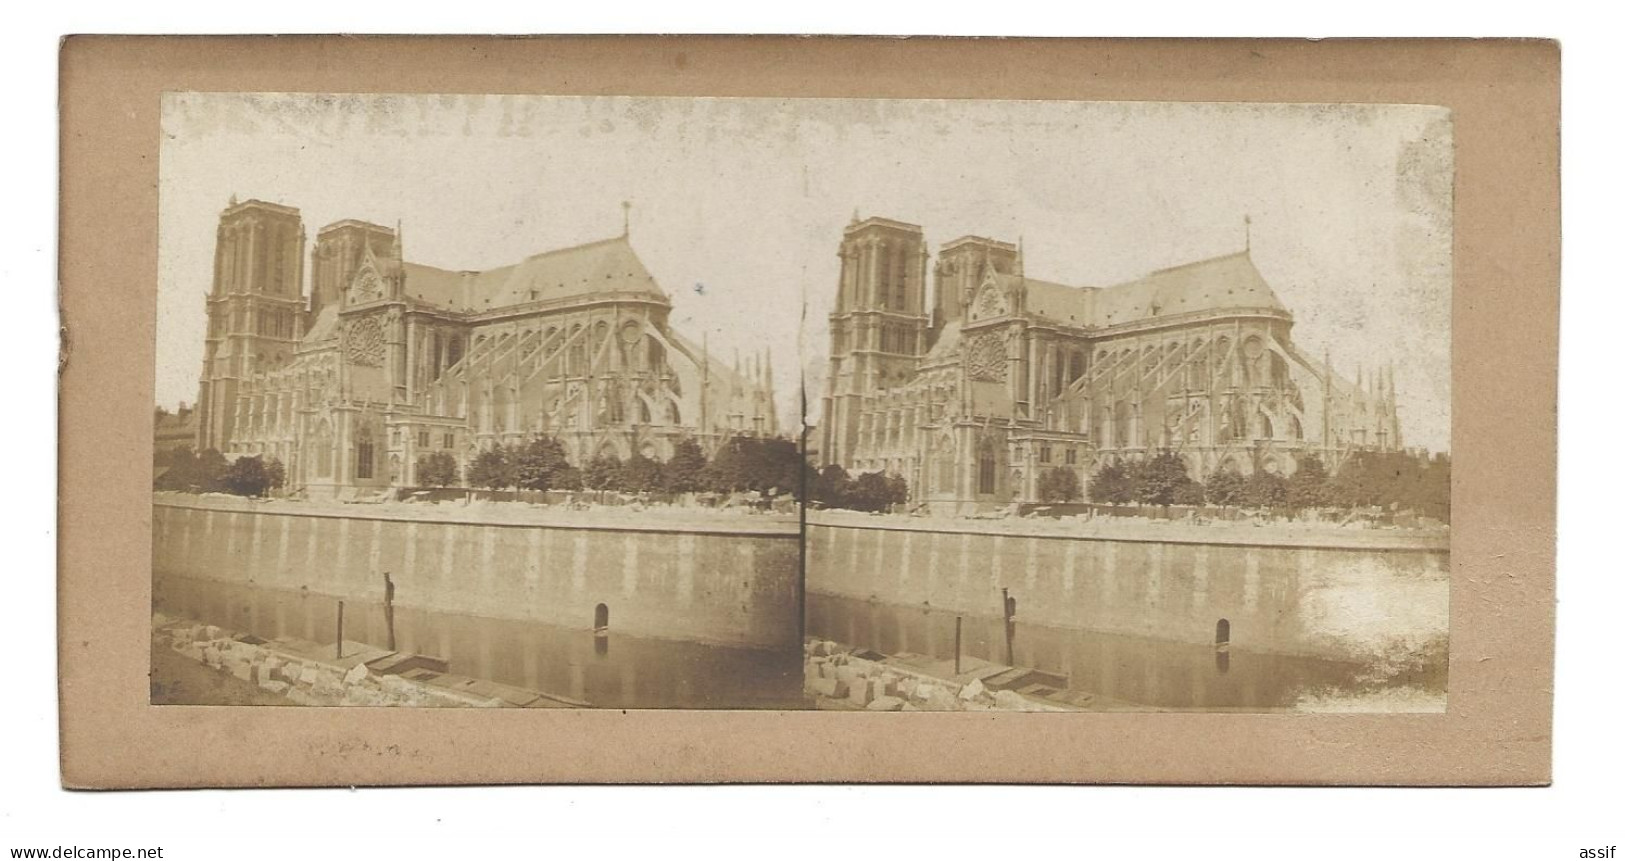 Paris Notre Dame ( Sans Sa Flèche - Avant 1860 ) Photographie Stéréoscopique - Auteur ? - Stereo-Photographie